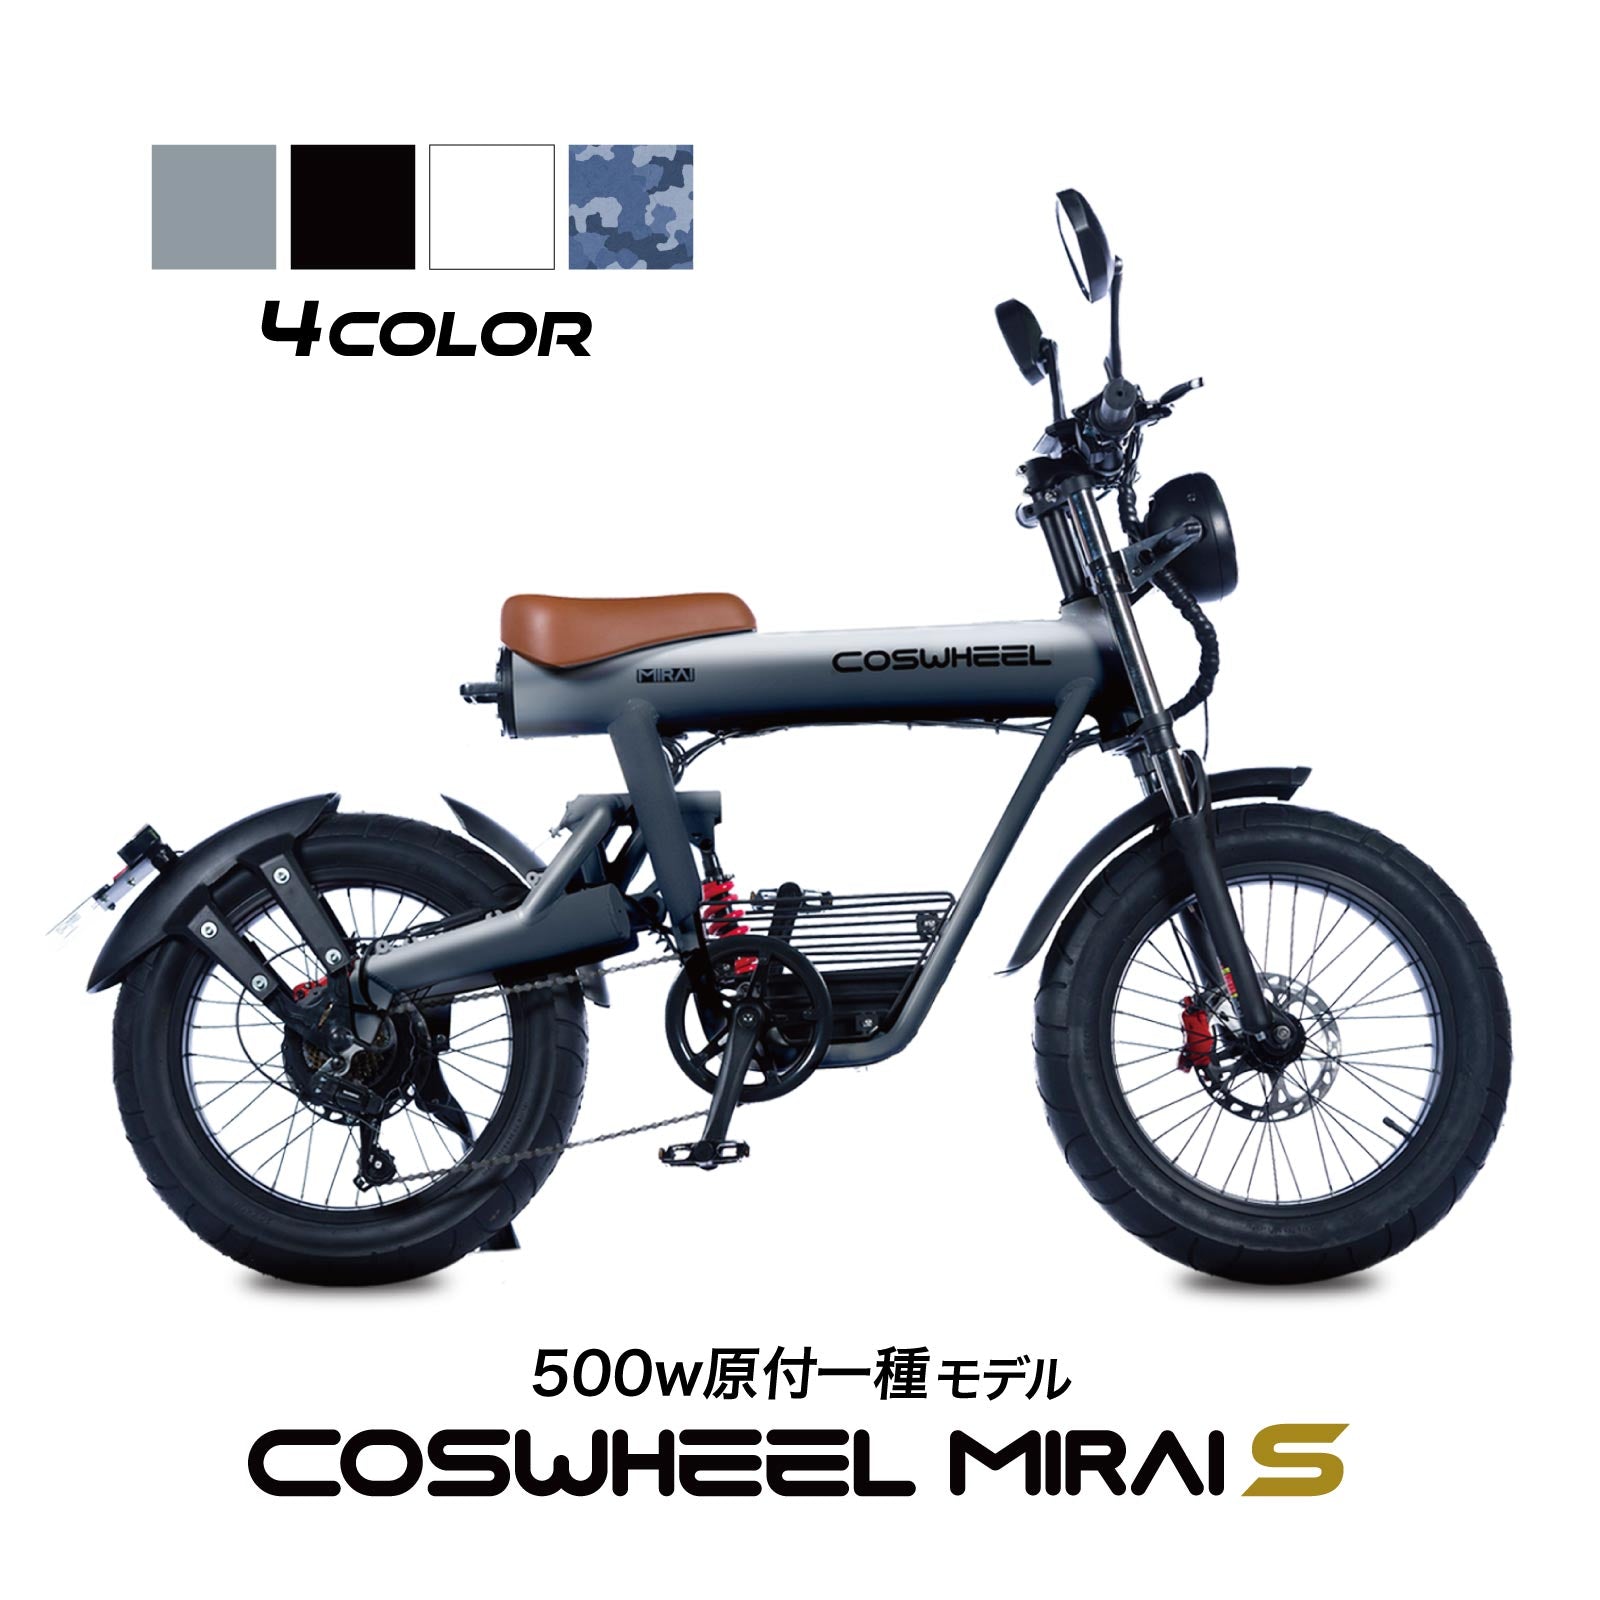 電動バイク COSWHEEL MIRAI S 500w 原付一種モデル / 公道走行可 ...